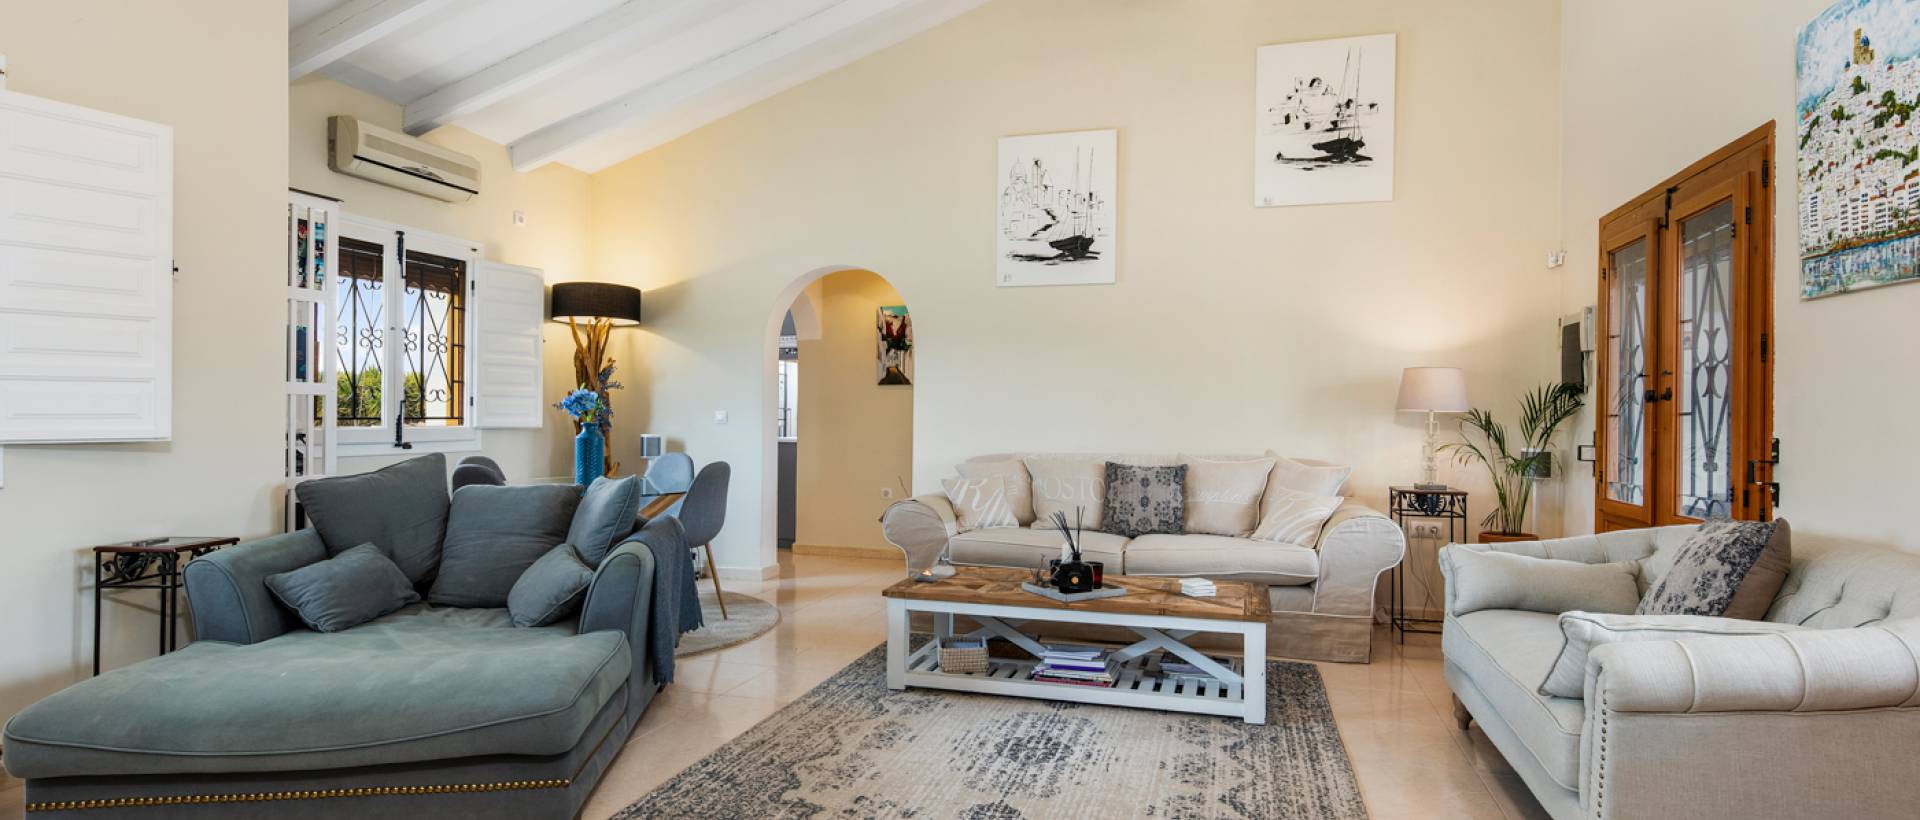 Salón | Comprar casa de campo en venta en Almoradí Alicante